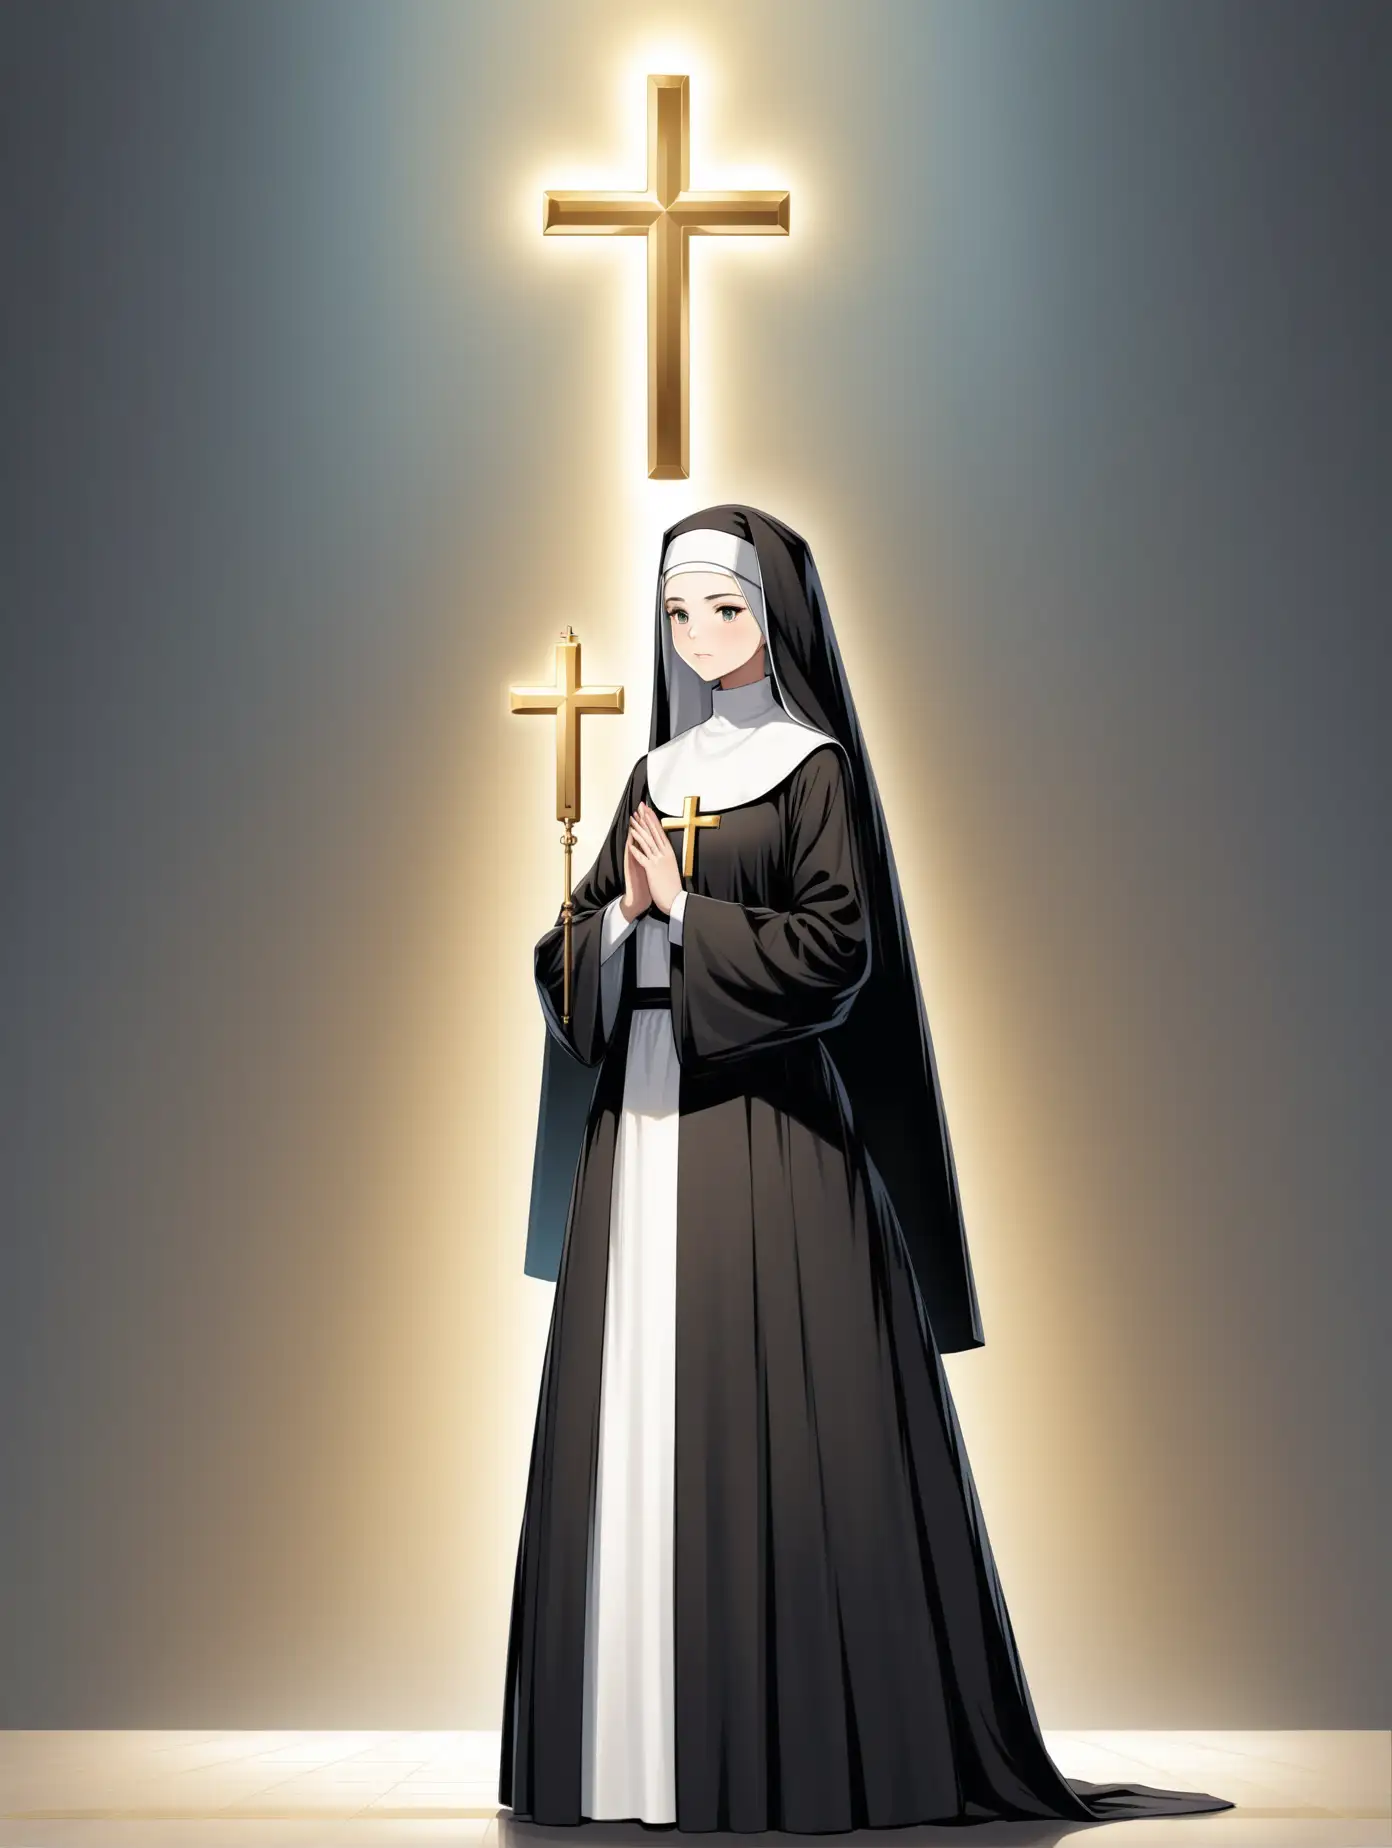 молодая девушка, монашка, стоит во весь рост, золотой крестик